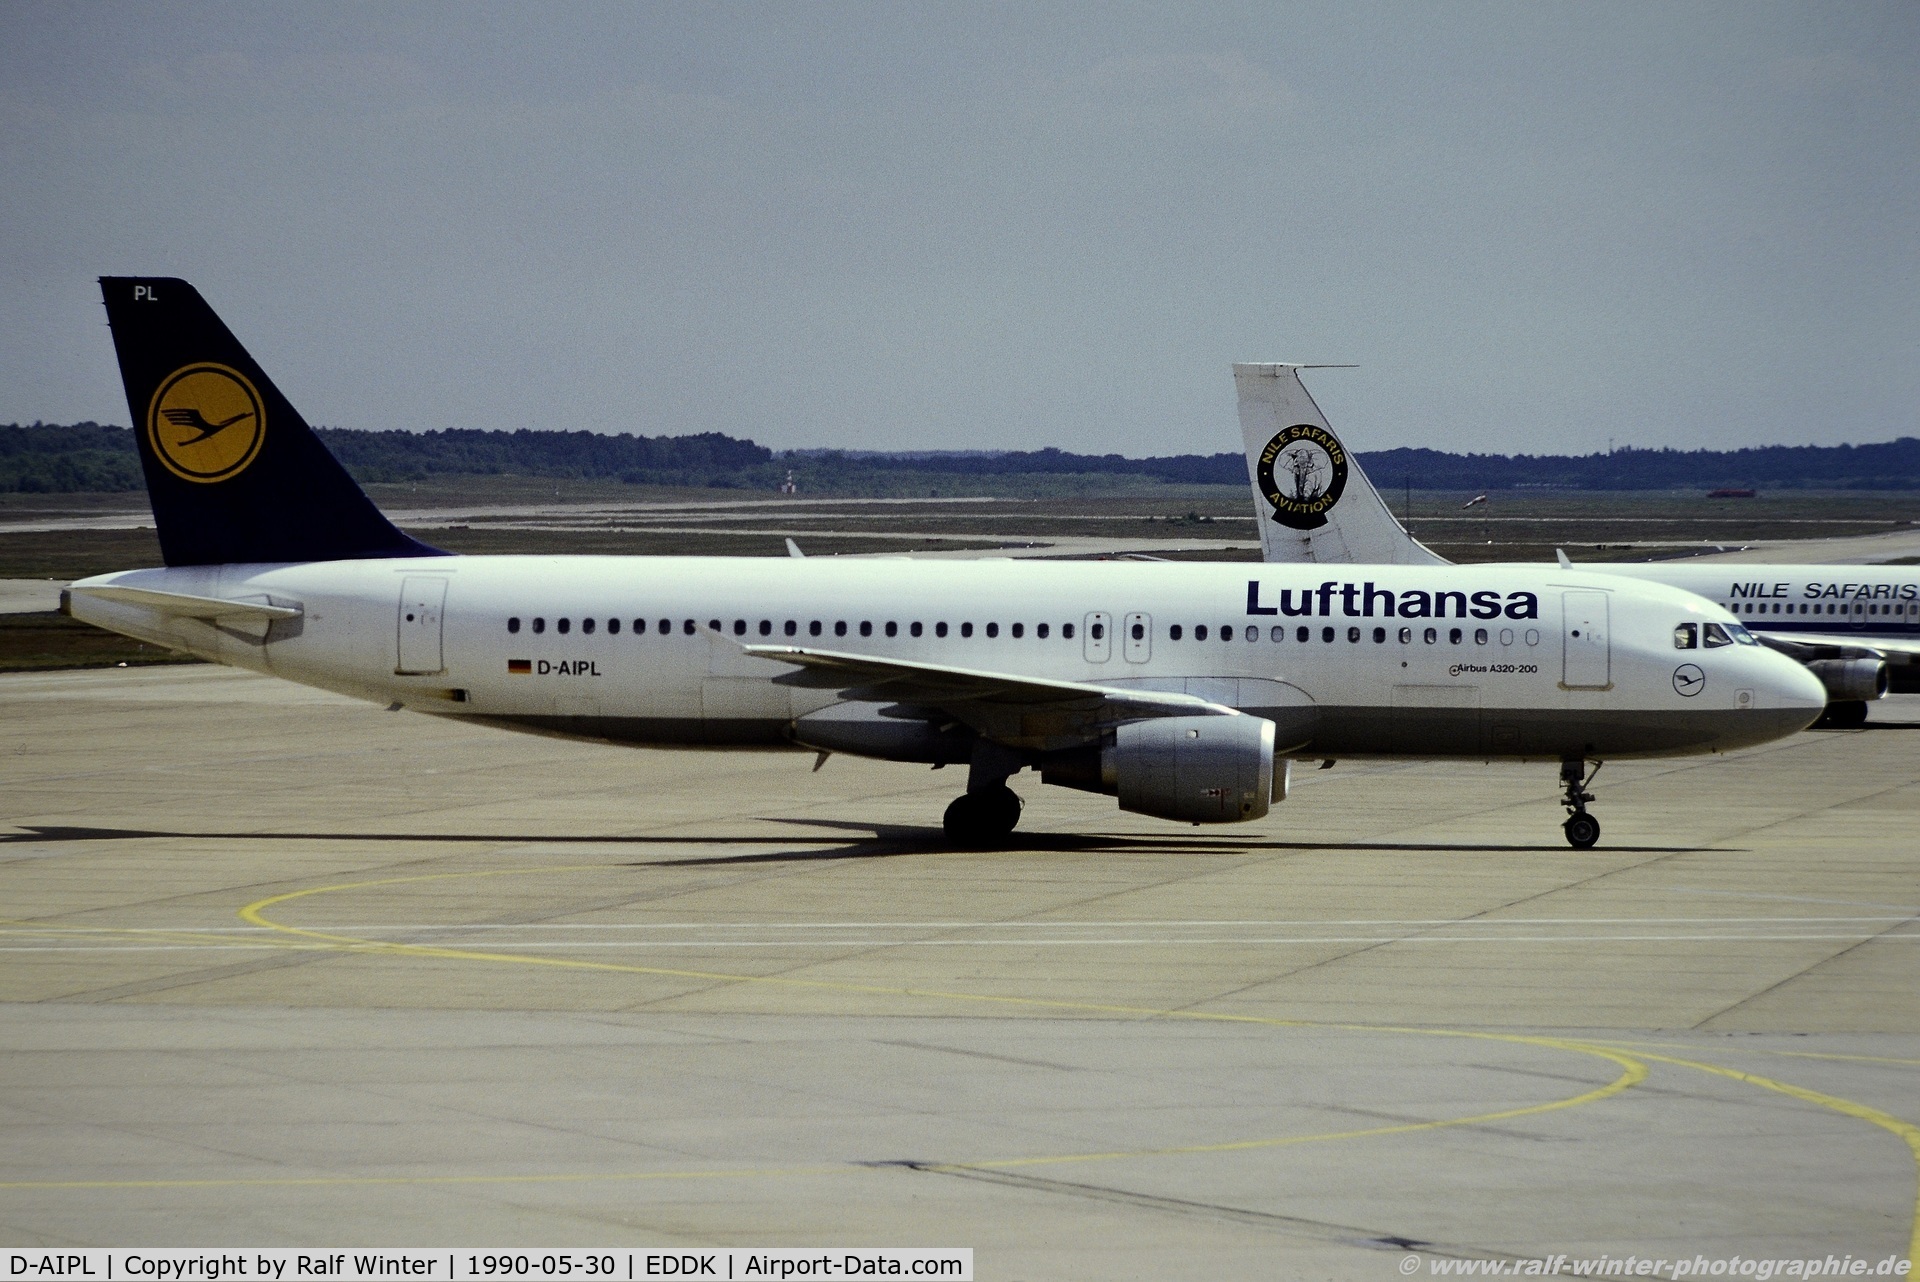 D-AIPL, 1989 Airbus A320-211 C/N 094, Airbus A320-211 - LH DLH Lufthansa 'Ludwigshafen am Rhein' - D-AIPL - 30.05.1990 - CGN